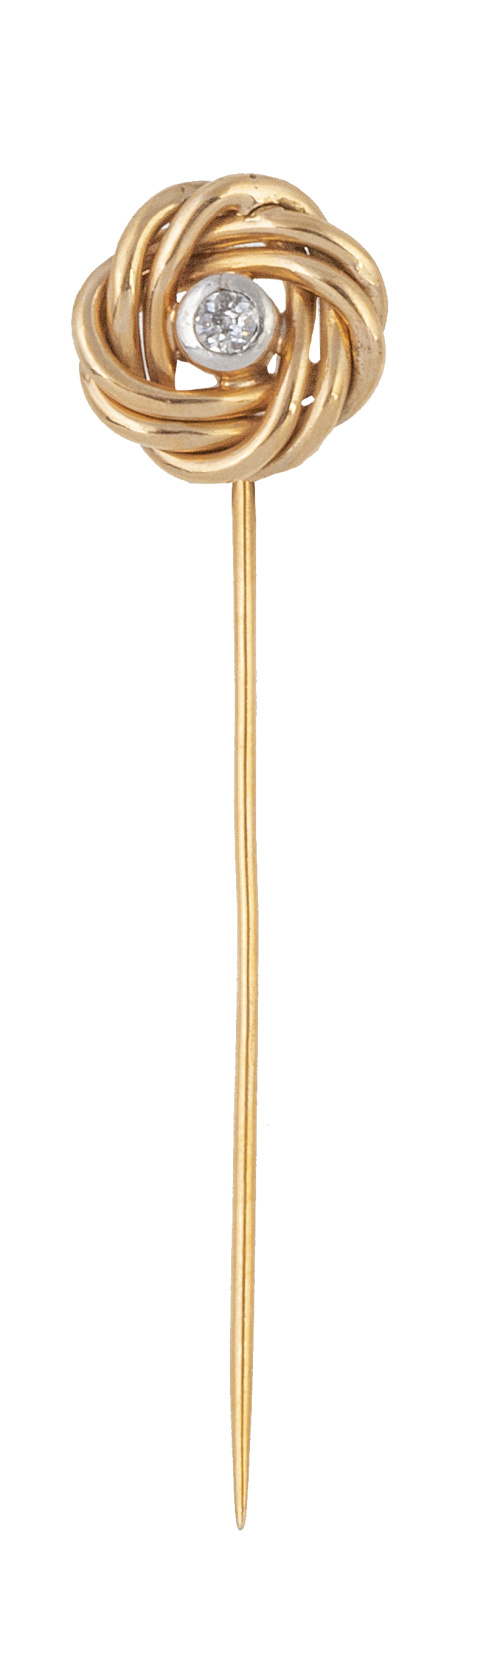 Alfiler de corbata de pp. S. XX con espiral de hilos de oro